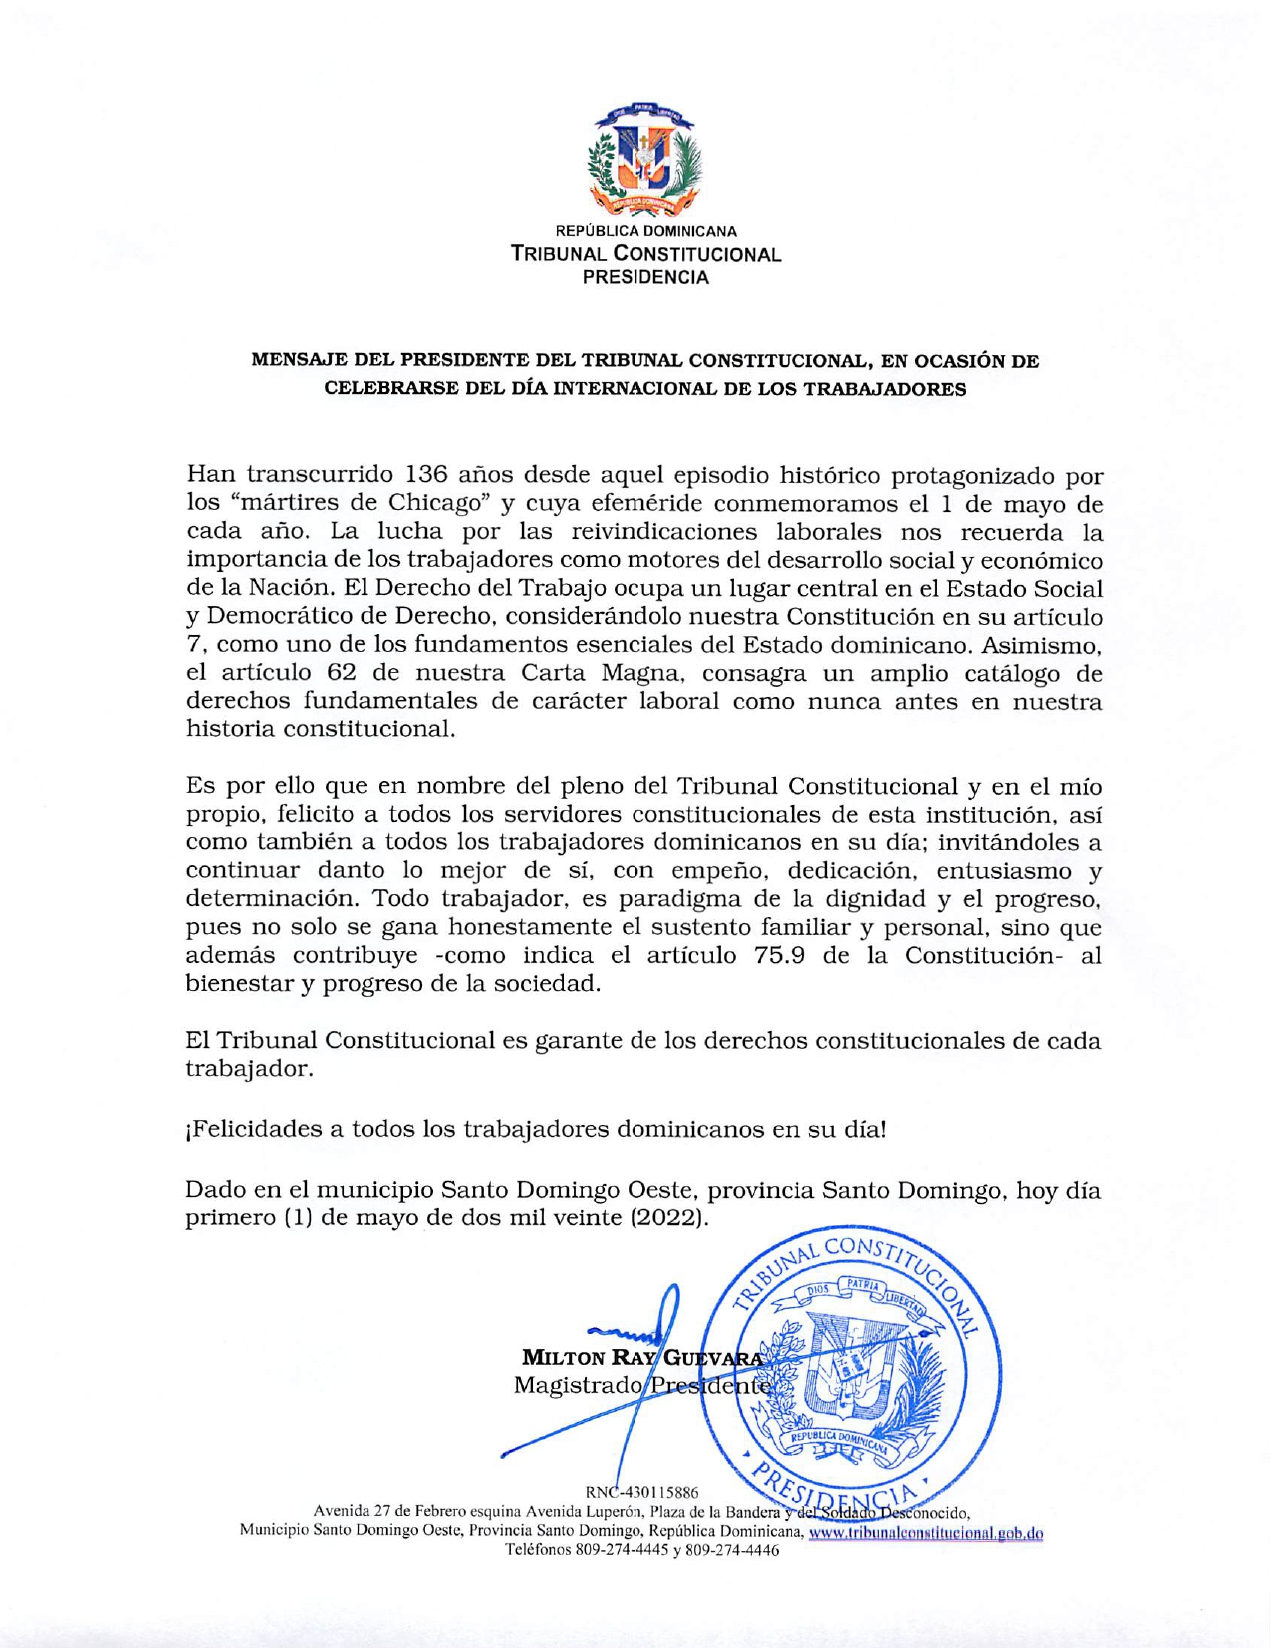 Mensaje del presidente del Tribunal Constitucional, Dr. Milton Ray Guevara, en ocasión de celebrarse el Día Internacional de los Trabajadores.